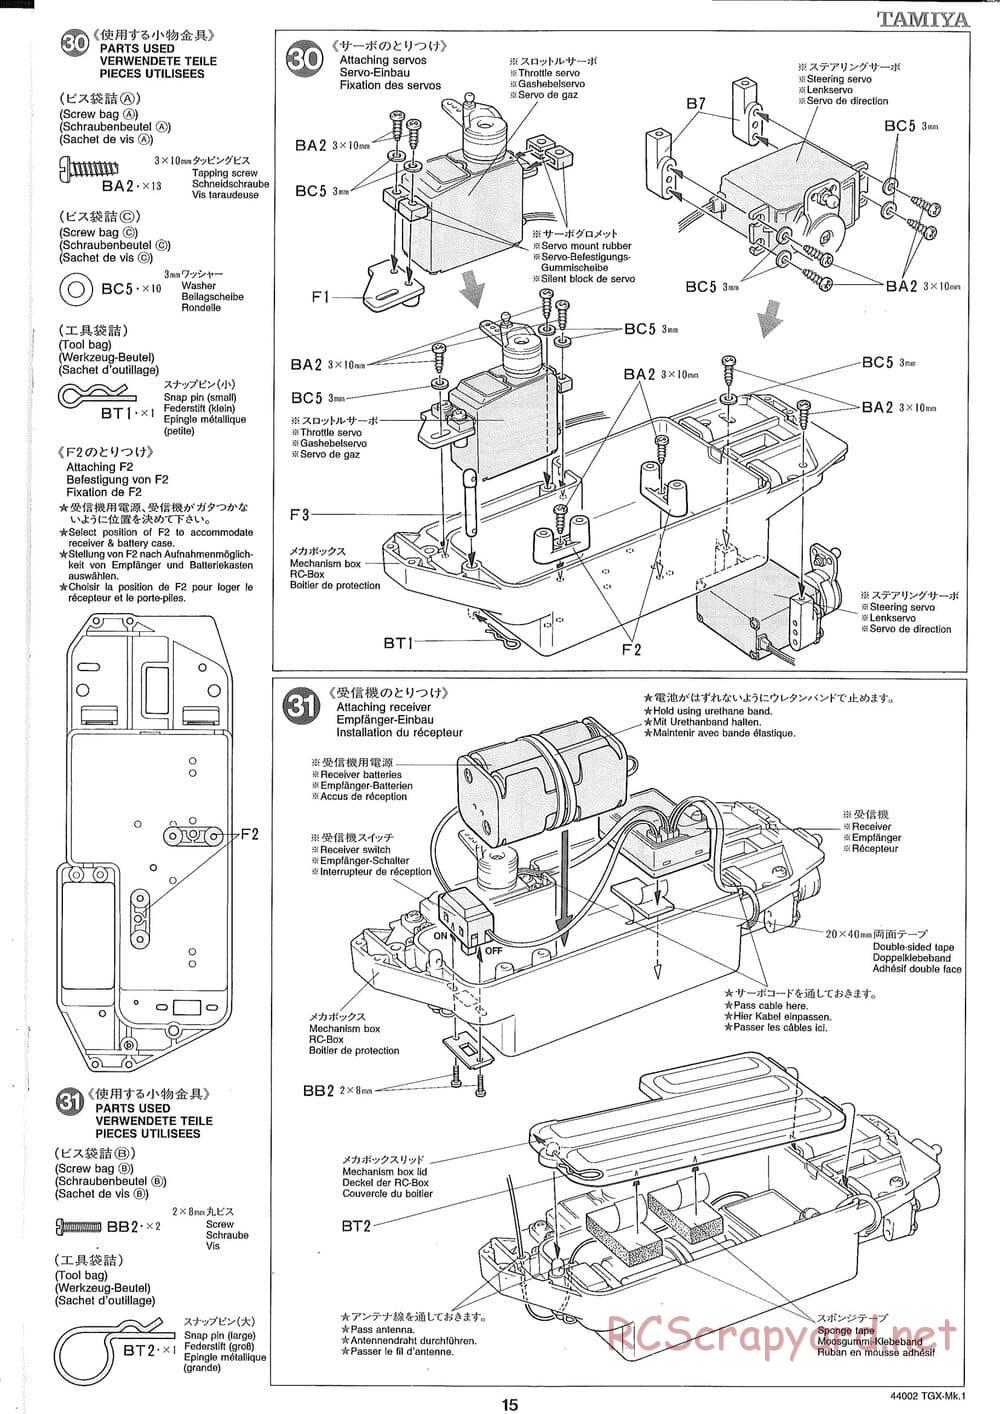 Tamiya - TGX Mk.1 TS Chassis Chassis - Manual - Page 15